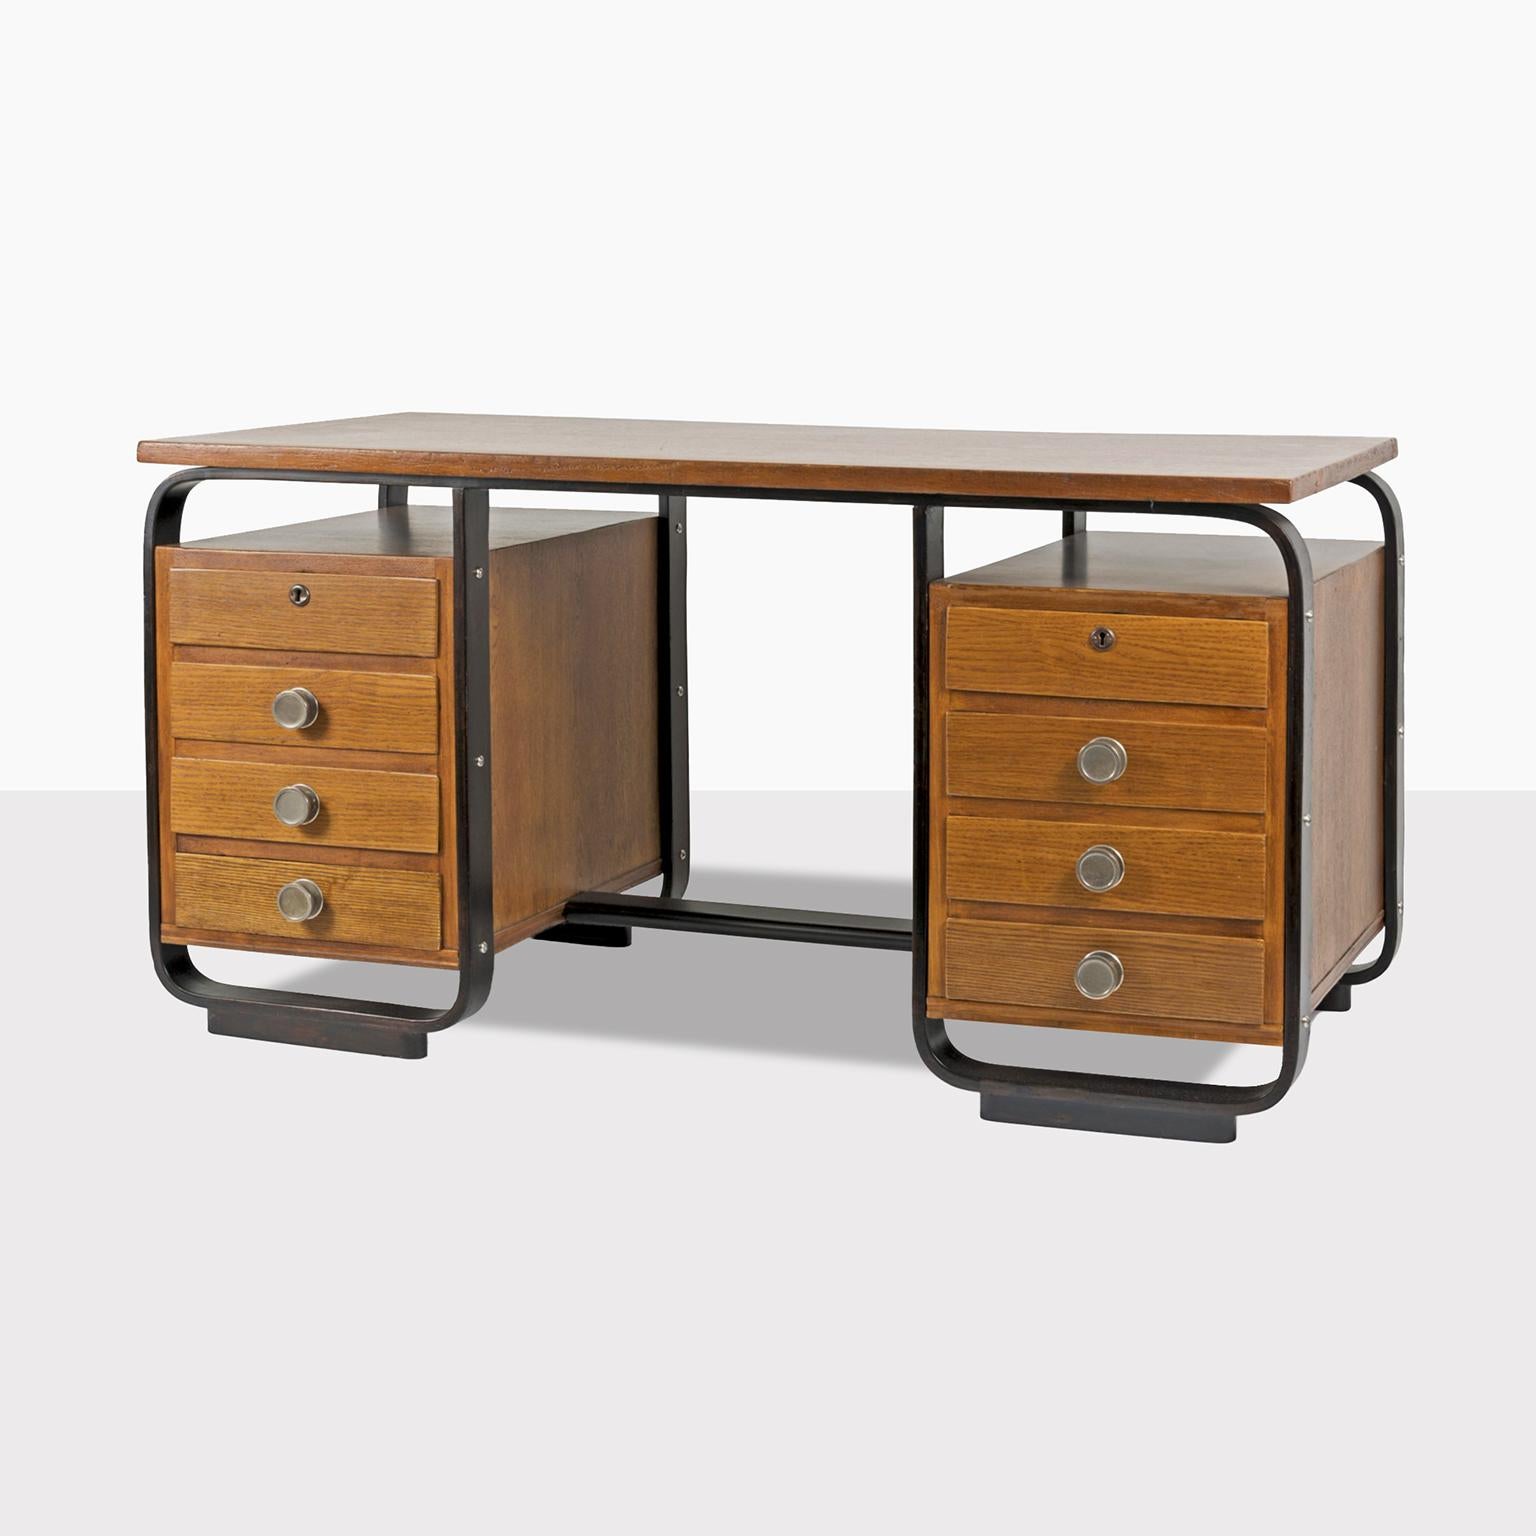 Rationalistischer Holztisch, entworfen von Giuseppe Pagano Pogatschnig und hergestellt von Maggioni, Varedo, um 1940. Der Schreibtisch wurde für die Bocconi-Fakultät in Mailand entworfen.